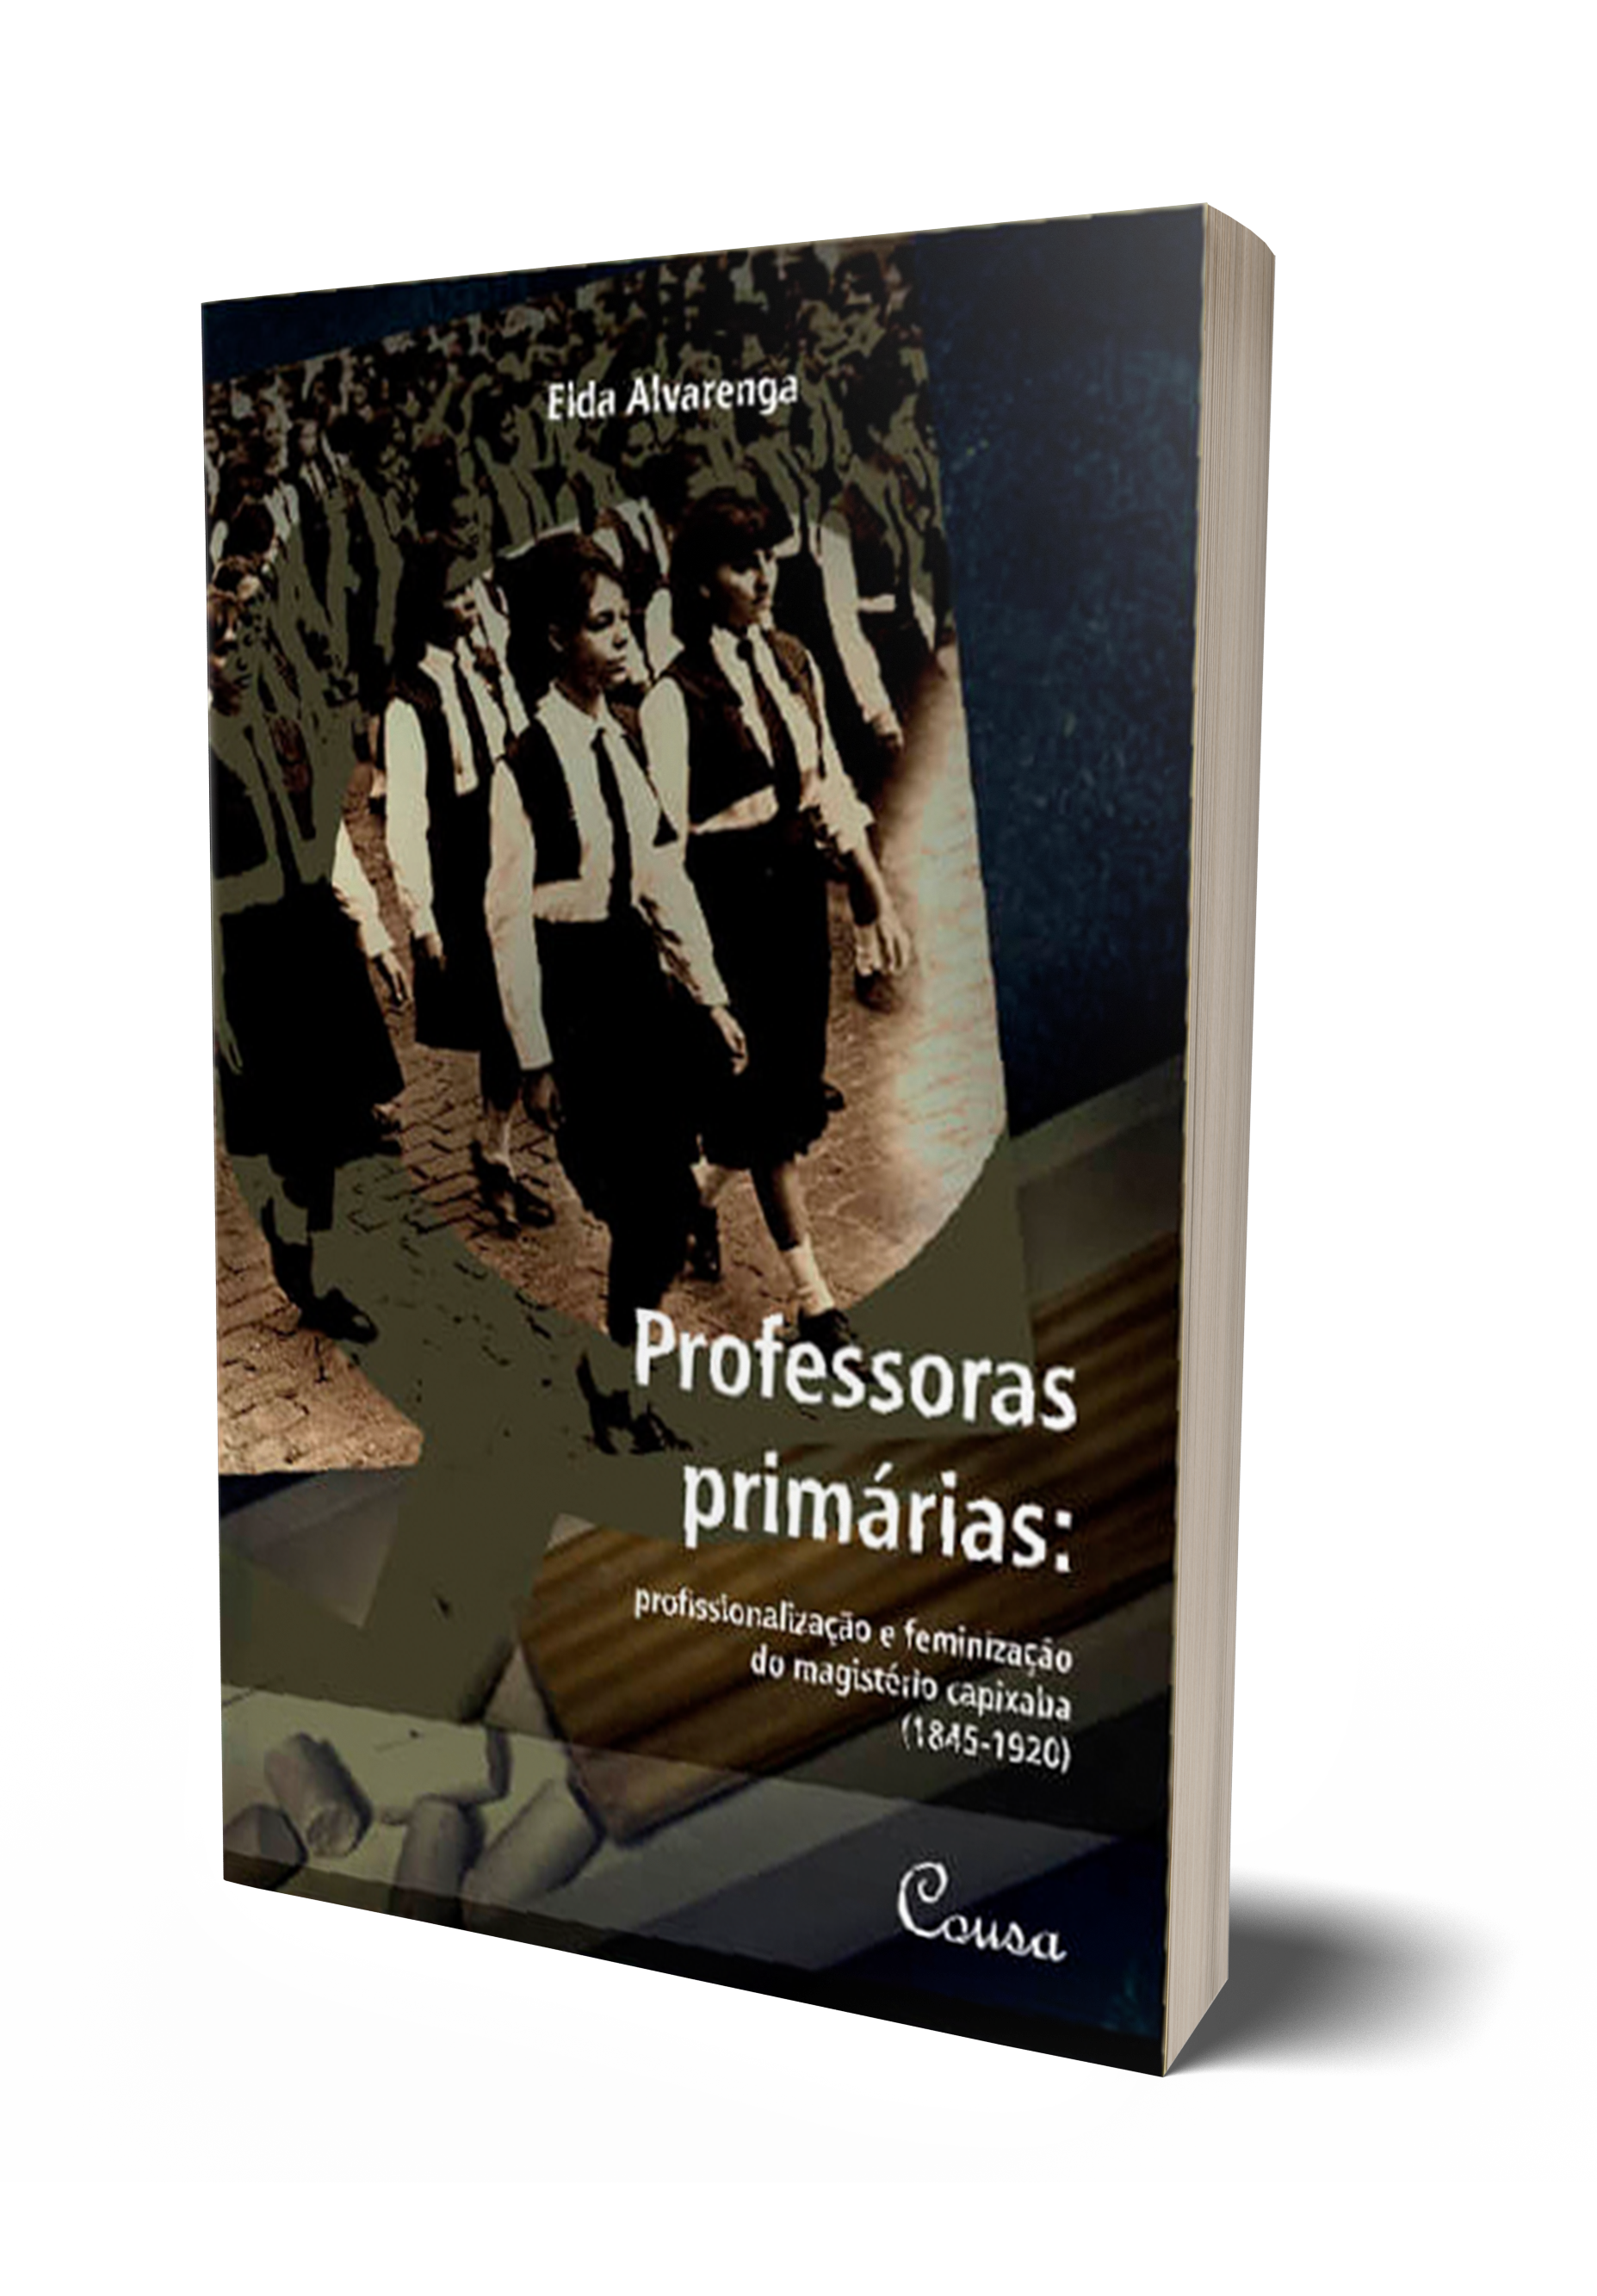 ALVARENGA, Elda. Professoras primárias: profissionalização e feminização do magistério capixaba (1845-1920). Vitória: Cousa, 2019.